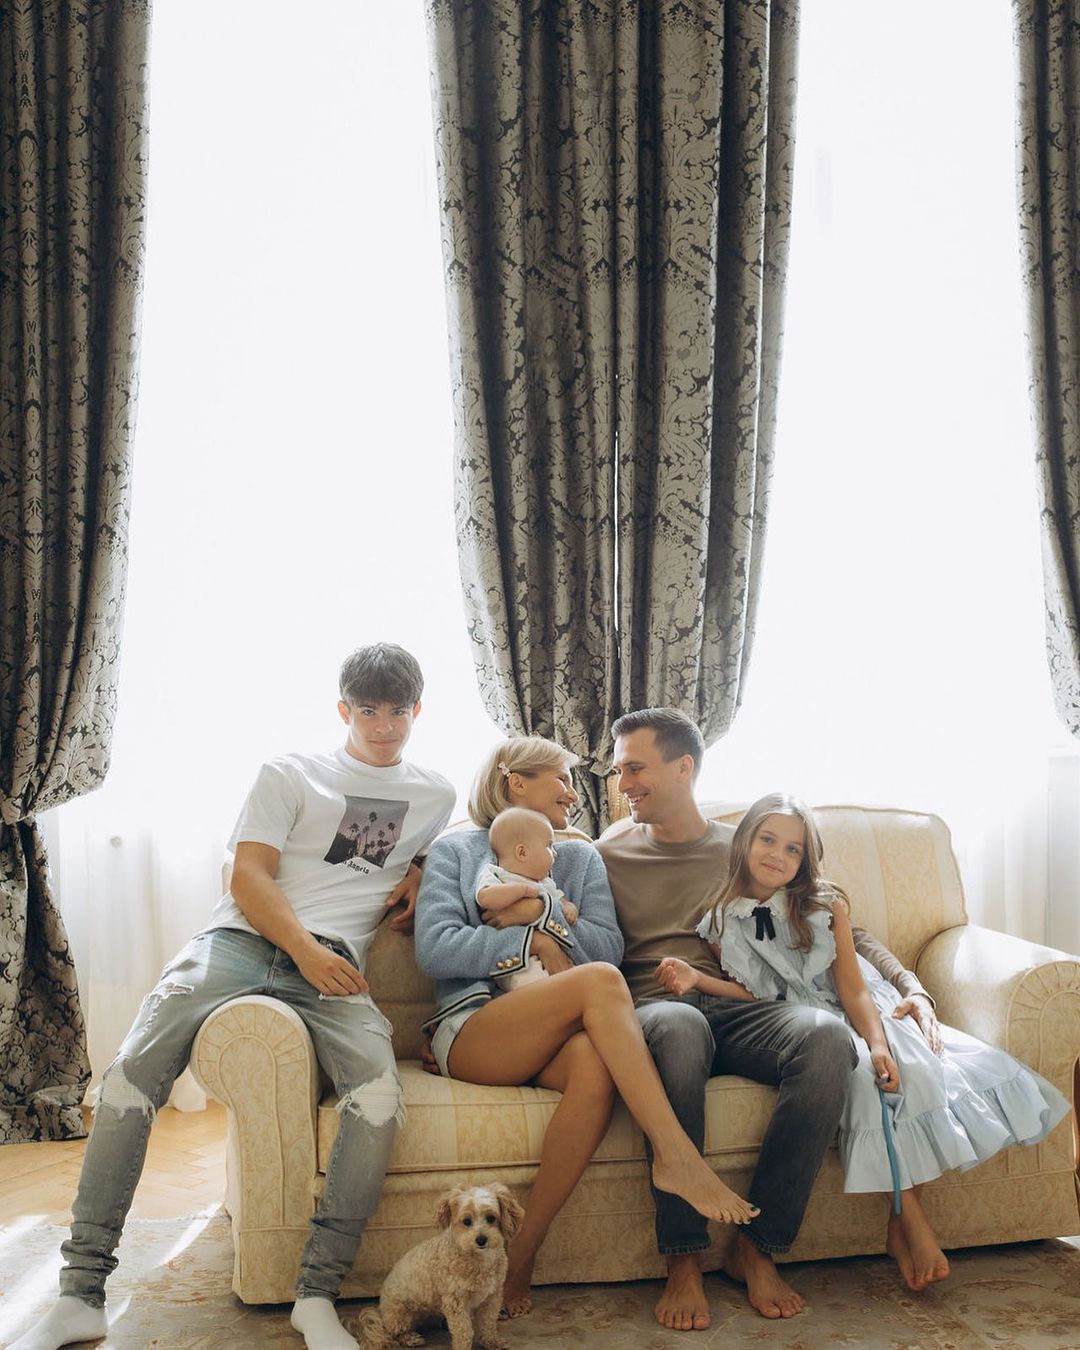 Олександр Скічко вперше показав усіх своїх дітей на одному фото